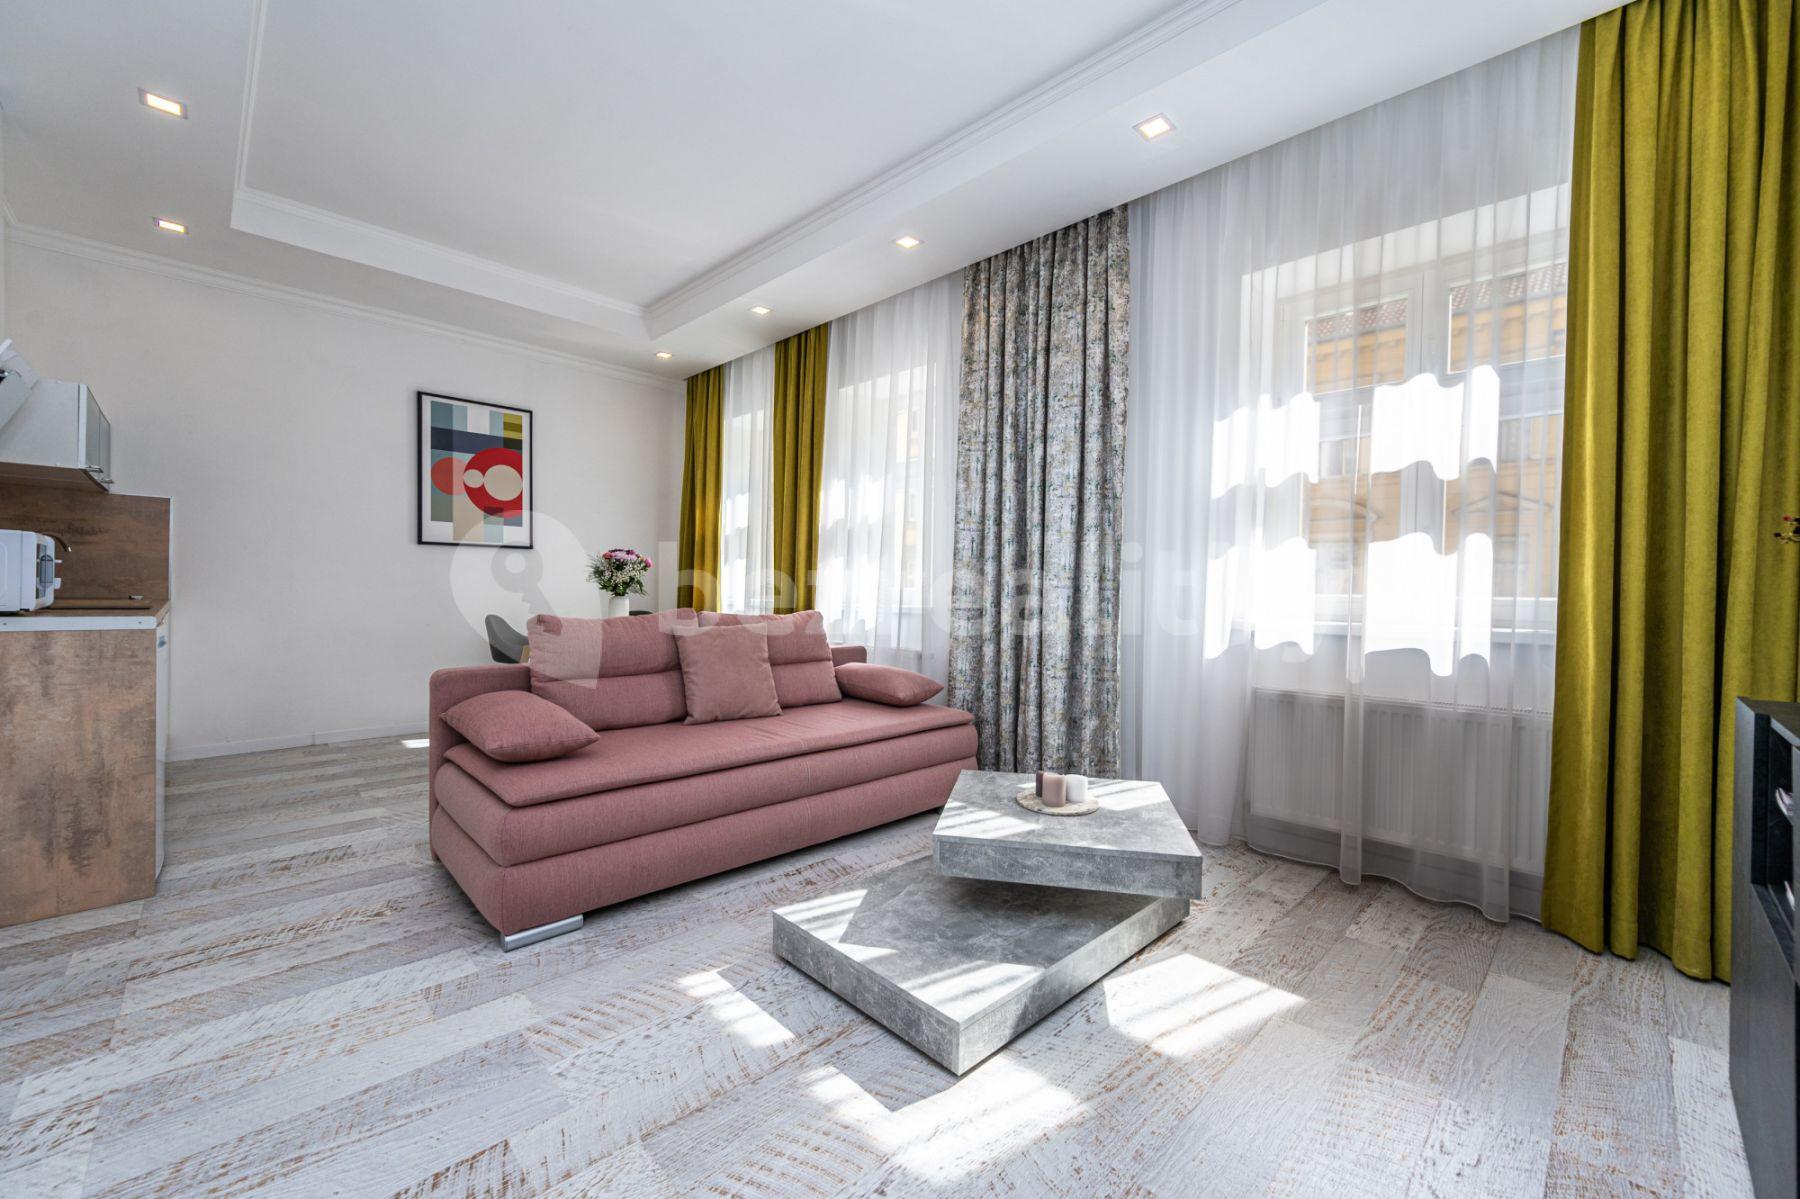 2 bedroom flat to rent, 60 m², Mečislavova, Prague, Prague